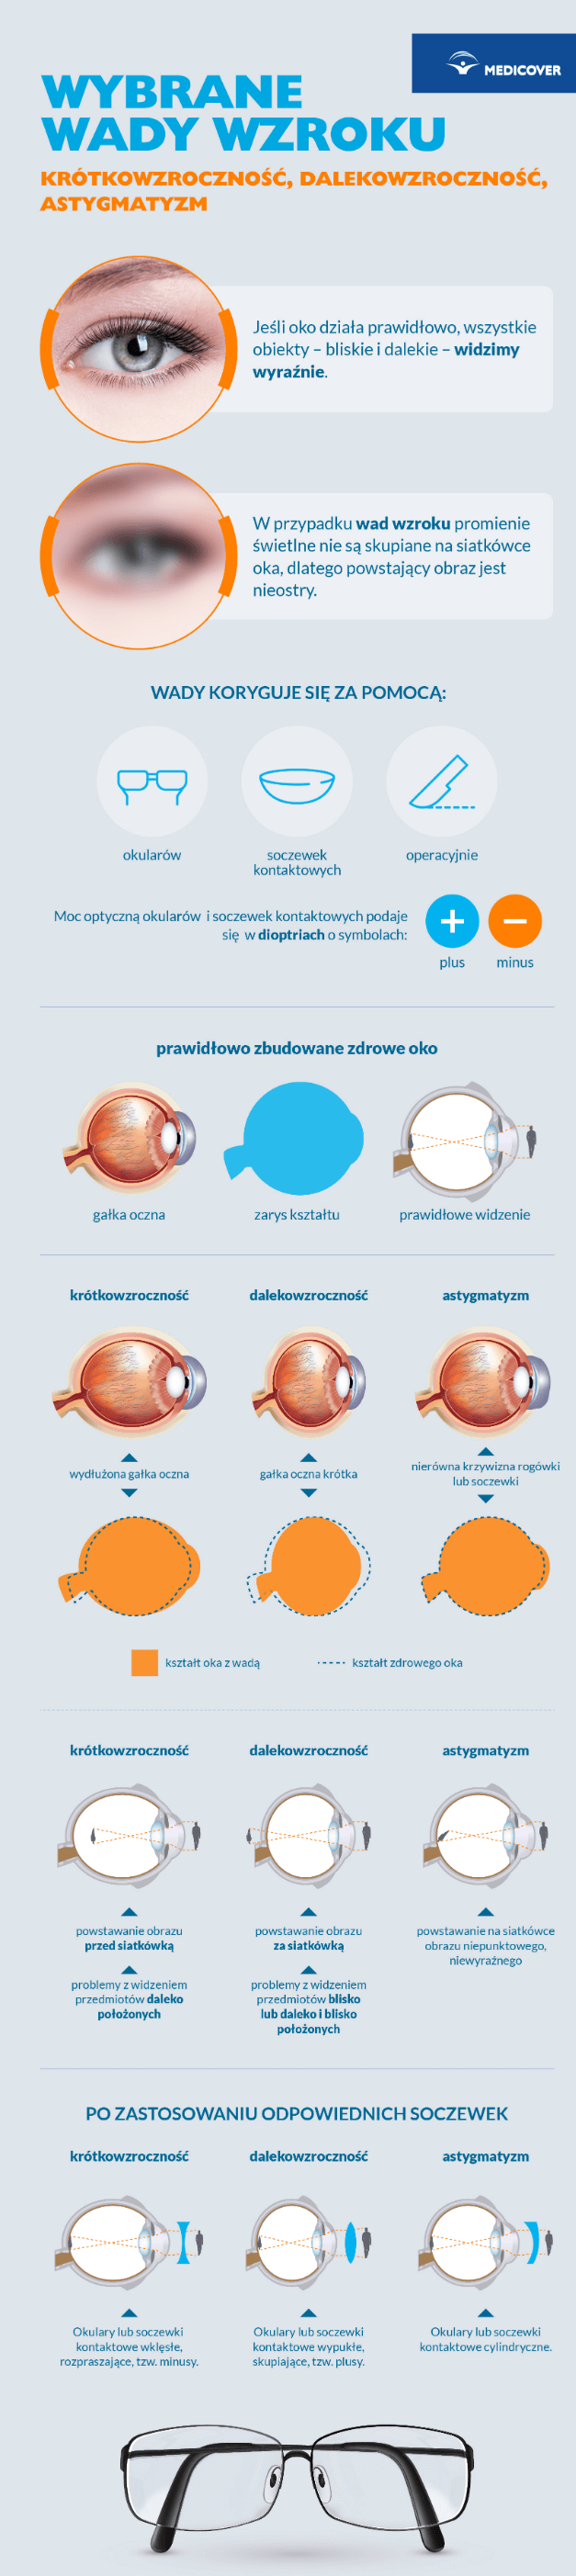 Wada wzroku może być korygowana poprzez okulary korekcyjne, szkła kontaktowe bądź operacyjnie. 